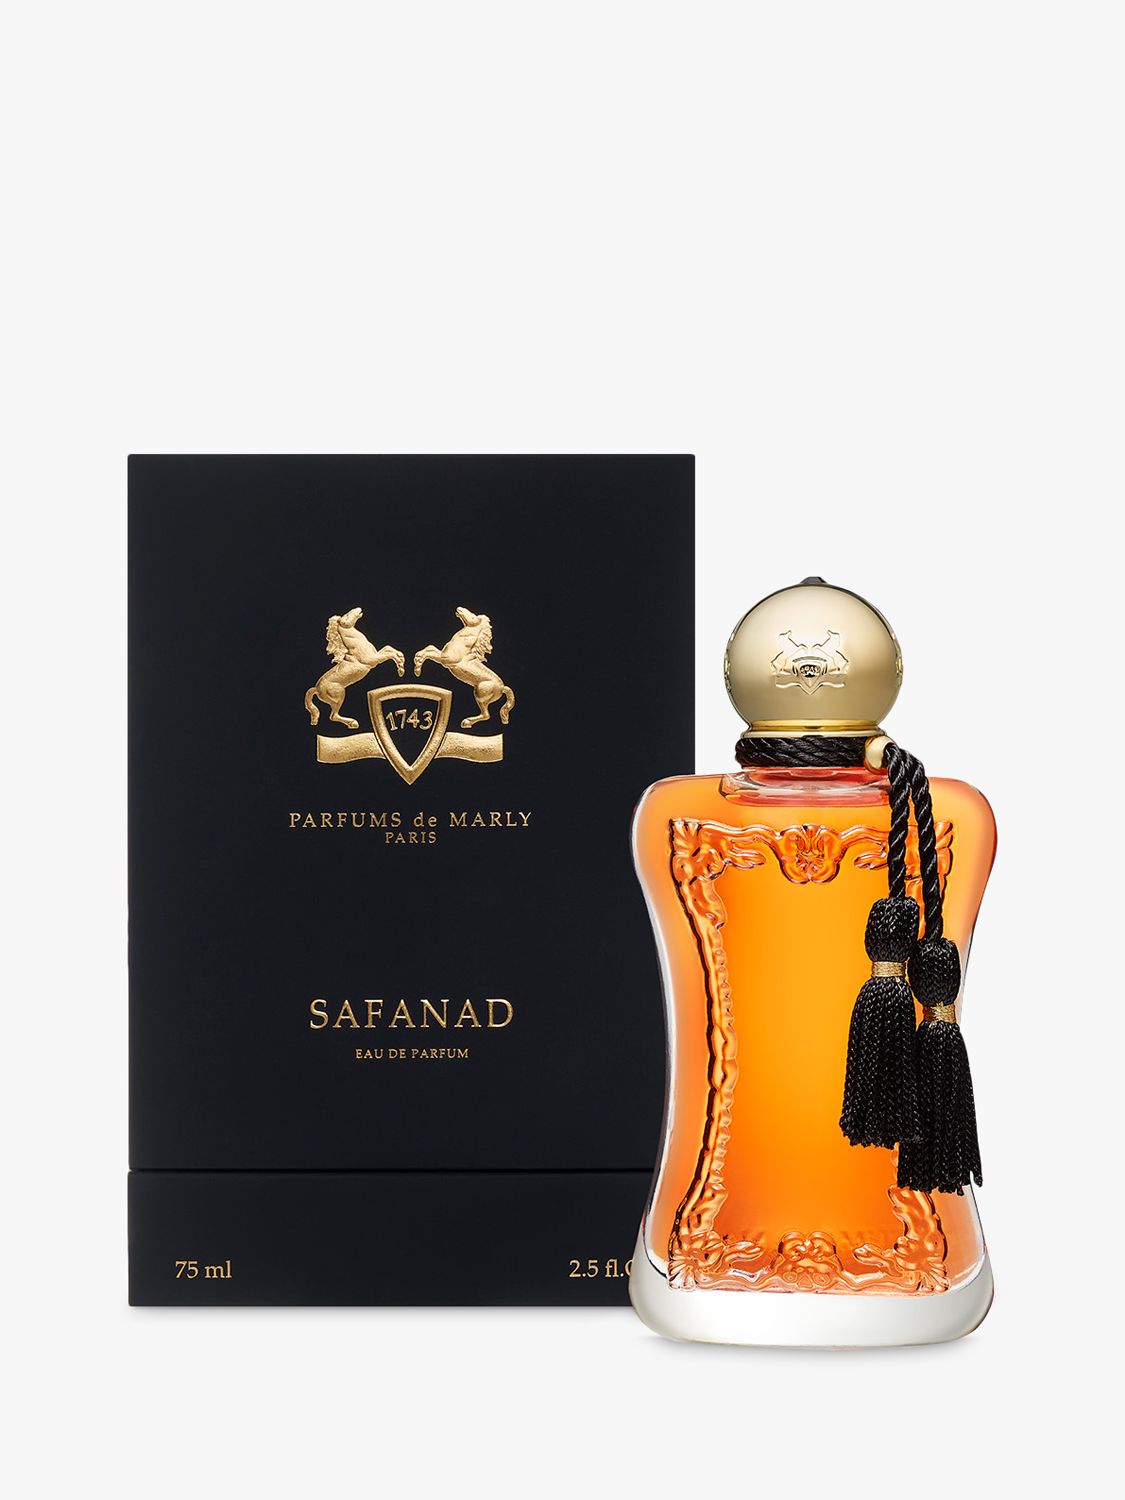 Parfums de Marly Safanad Eau de Parfum, 75ml 1